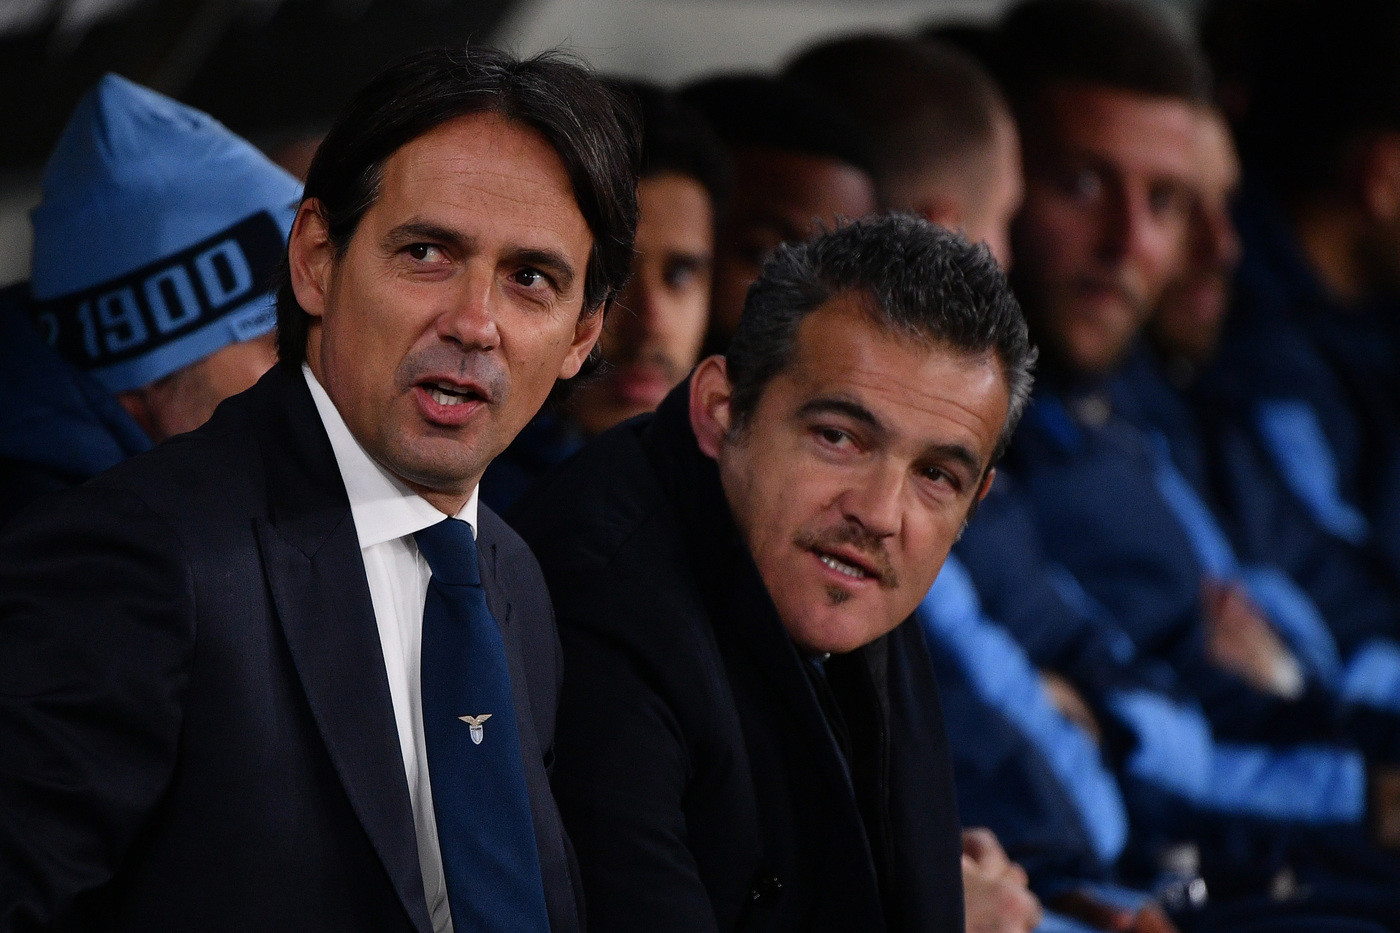 Serie A: Lazio-Samp, Inzaghi: “No calcoli sui diffidati. Occhio alle insidie”